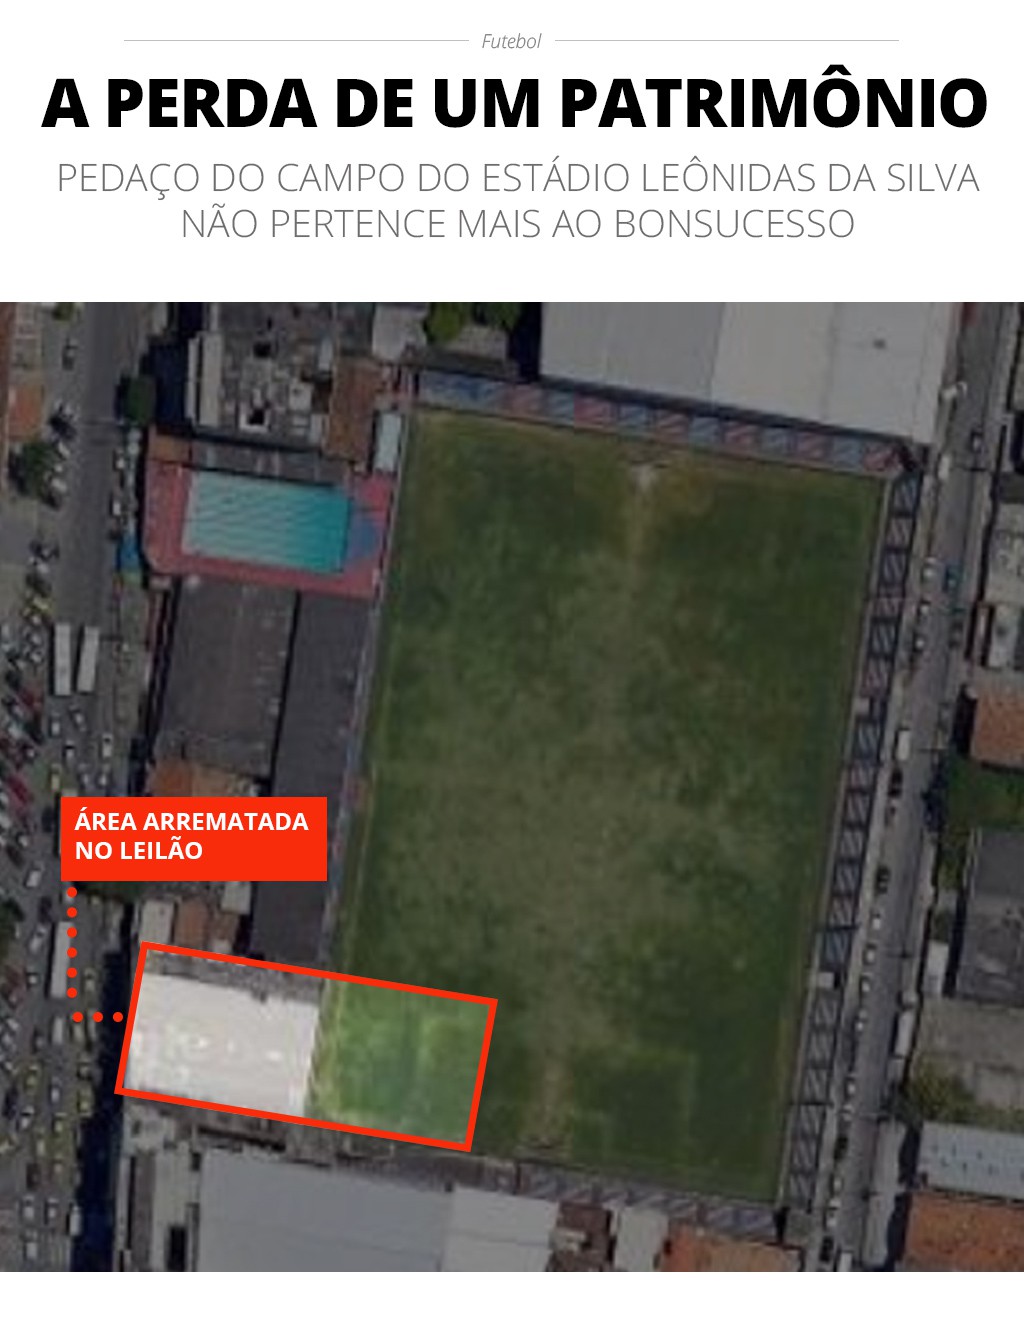 Imagem aérea do Estádio Leônidas da Silva, com destaque ao pedaço arrematado em leilão - Infoesporte